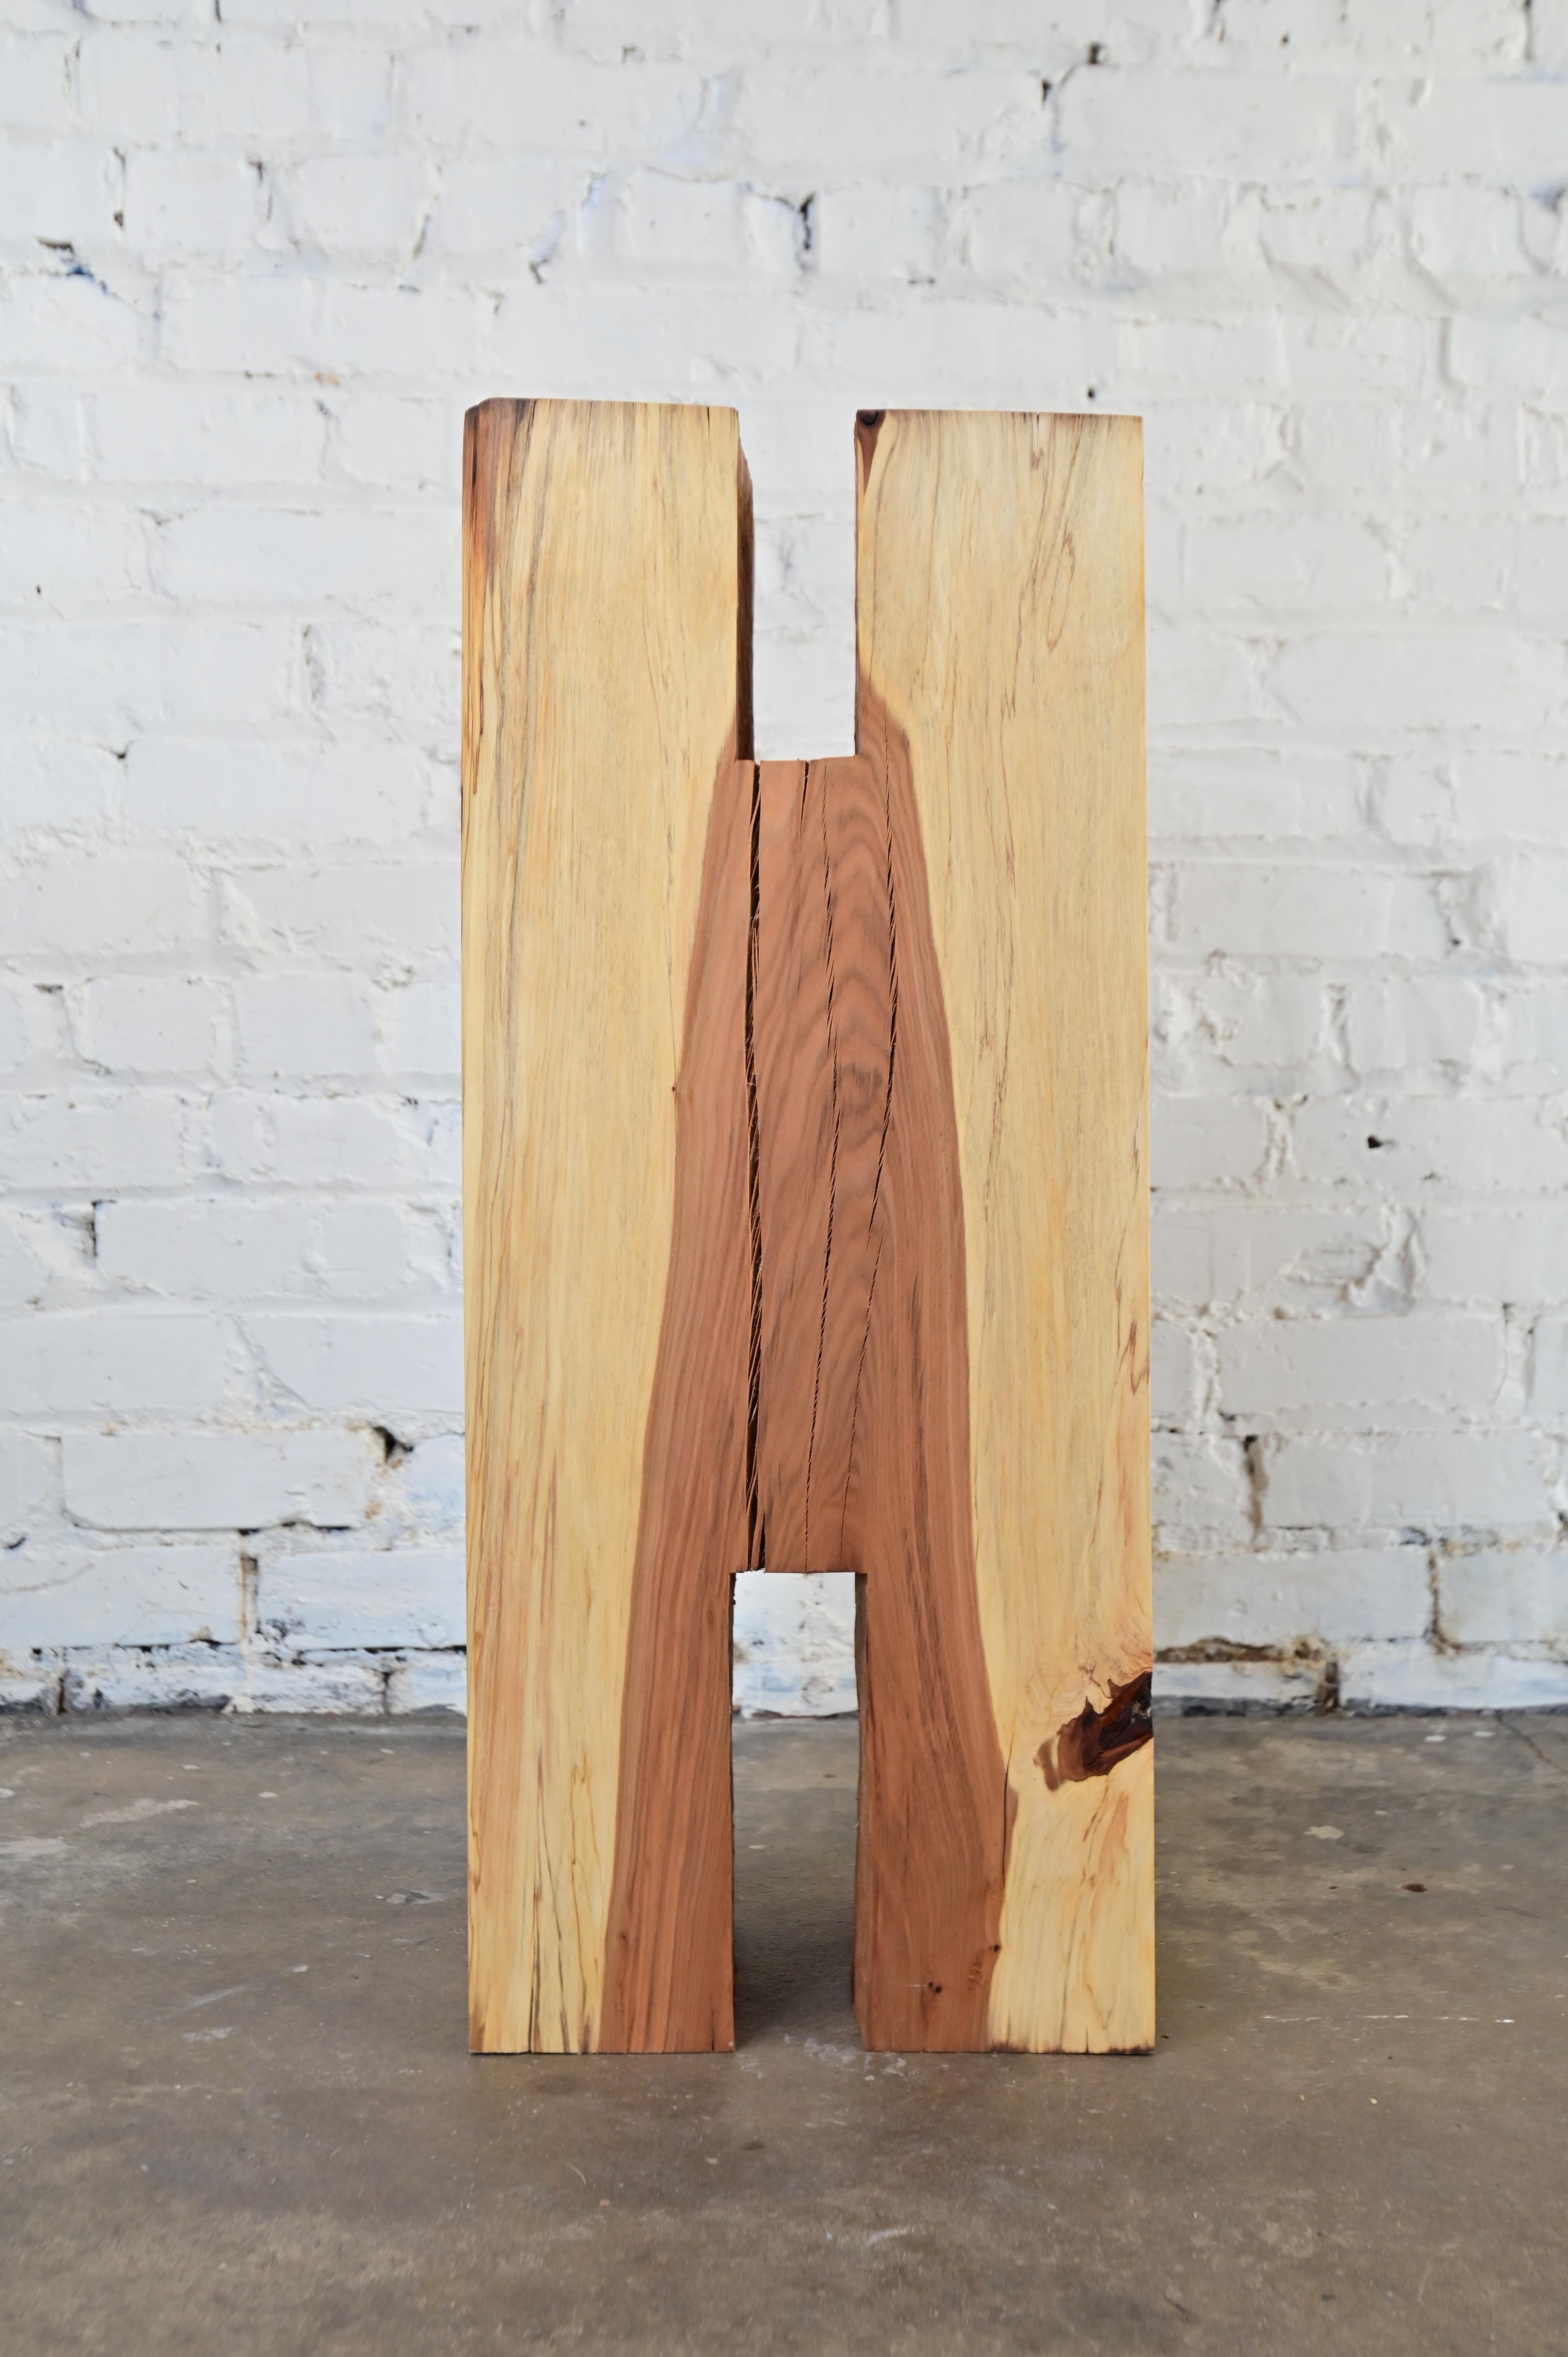 Carved Wooden Pedestal Art Object For Sale